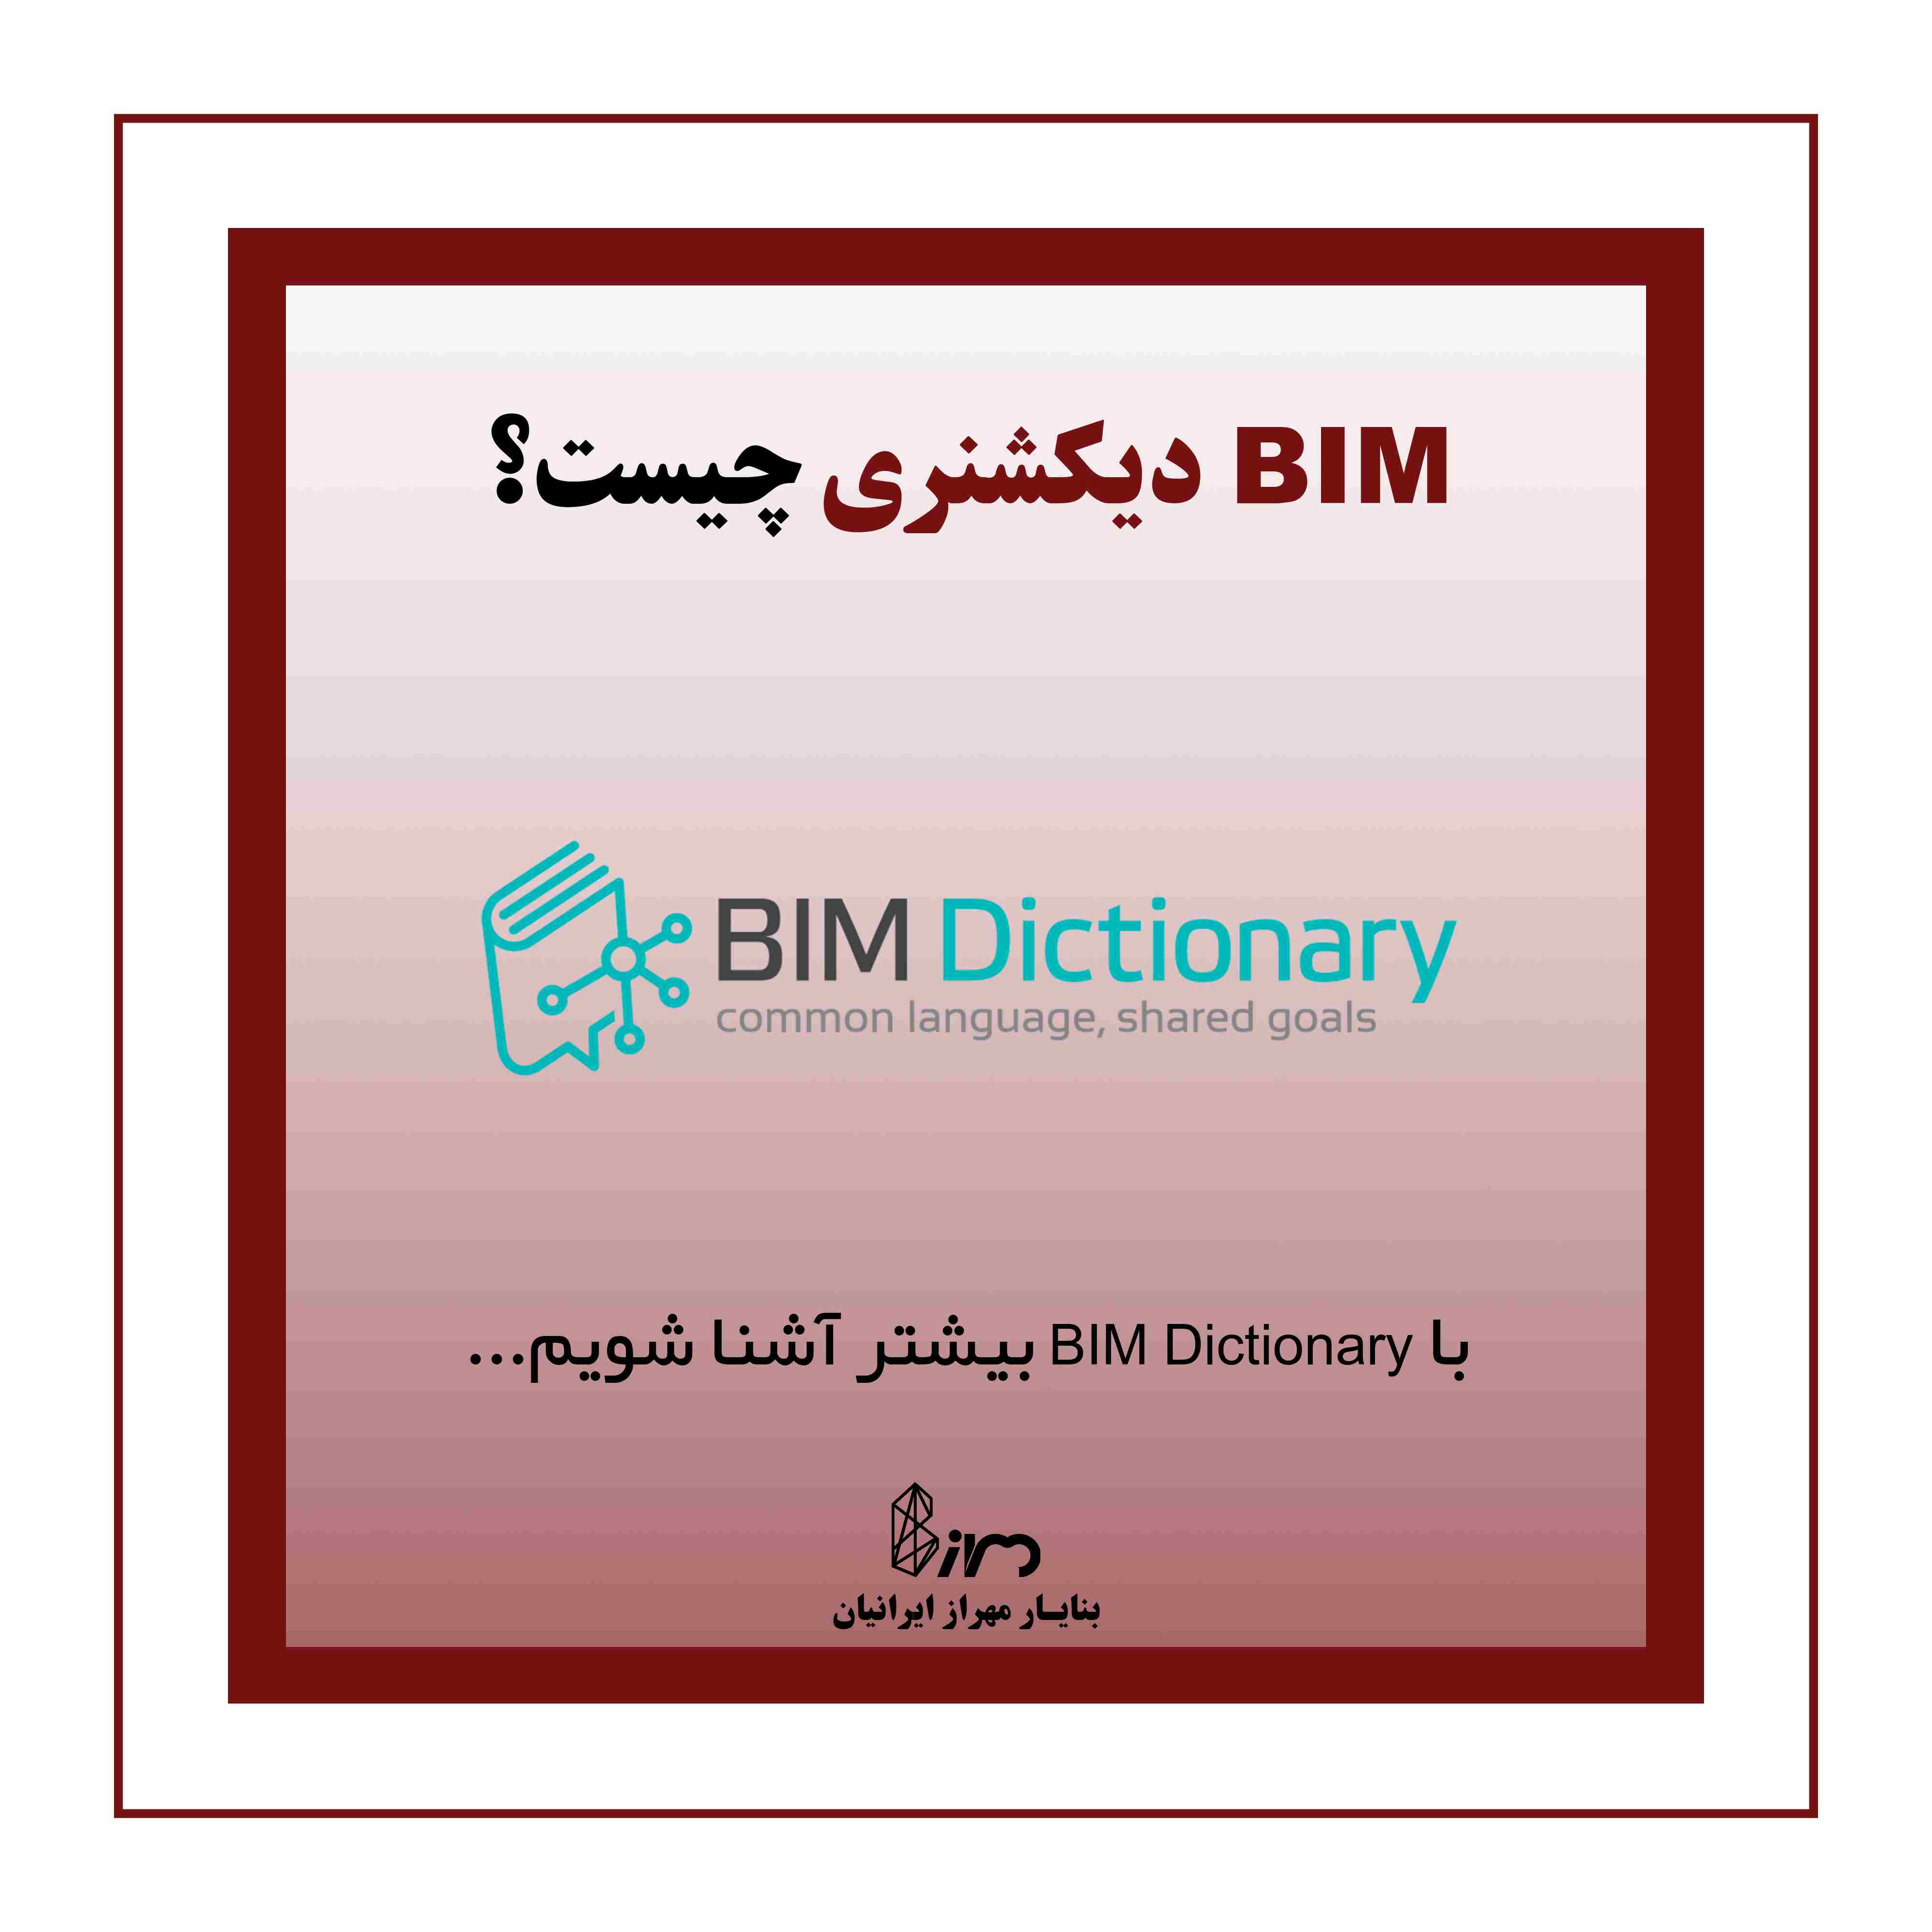 پروژه BIM Dictionary بیم دیکشنری